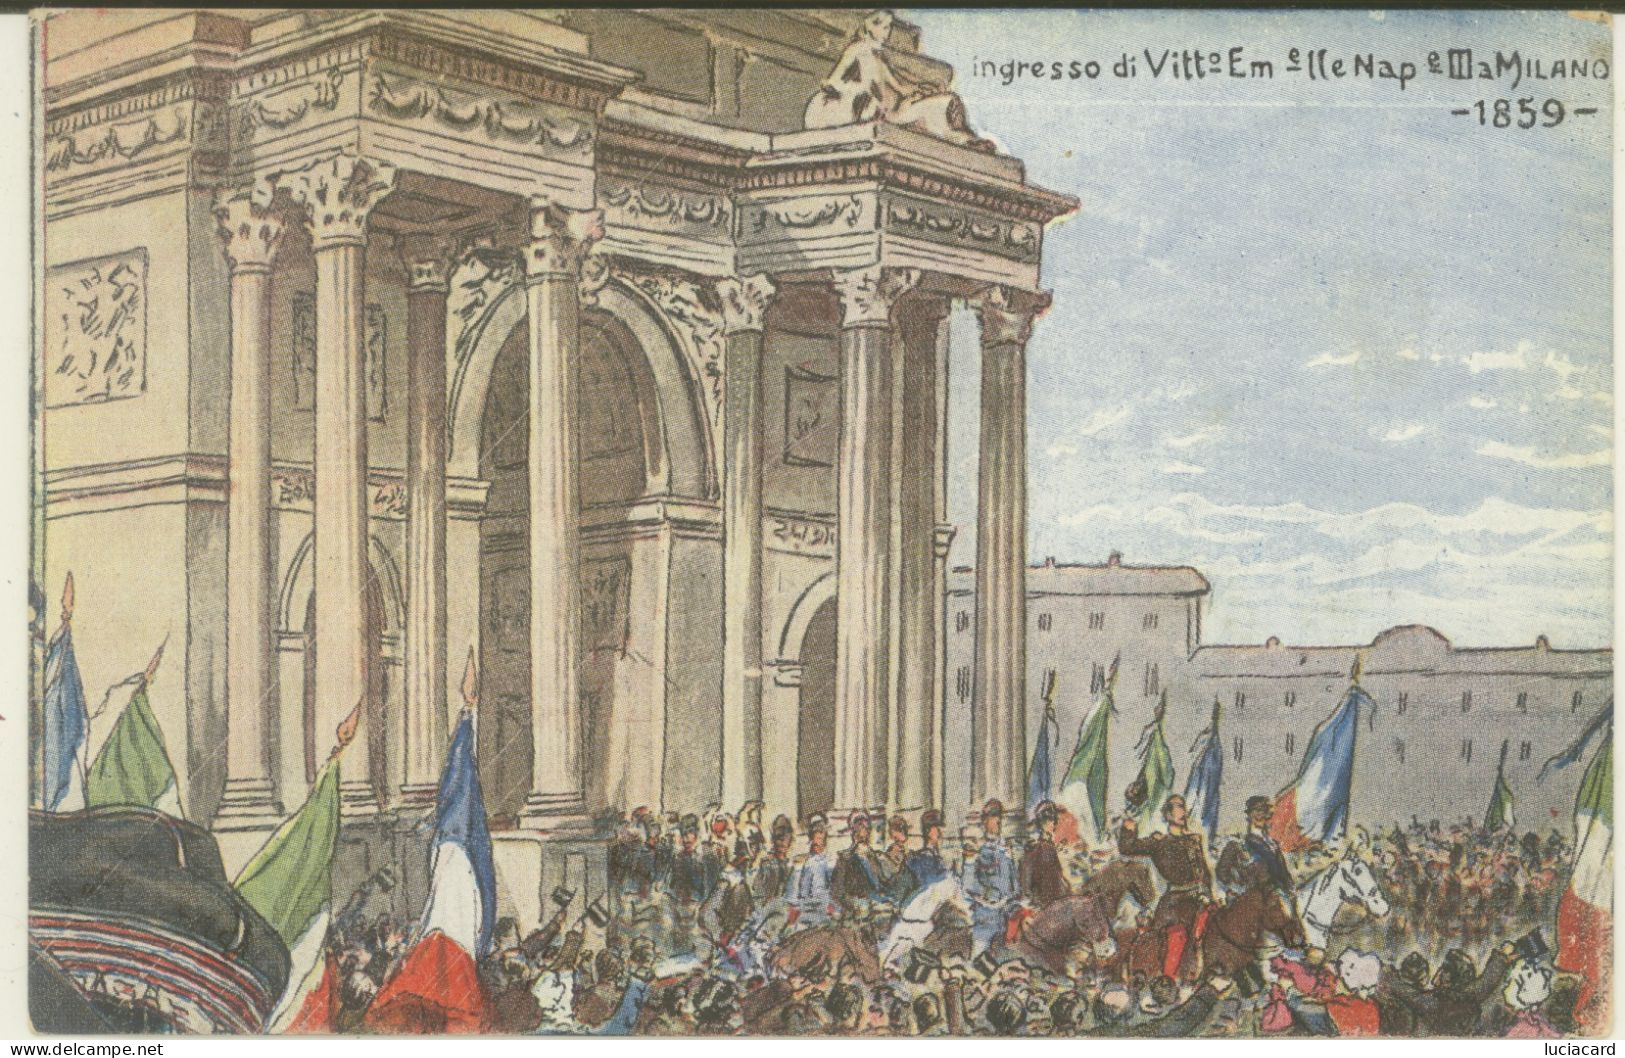 MILANO -INGRESSO DI VIITT. EMANUELE II E NAPOLEONE 1859 - Milano